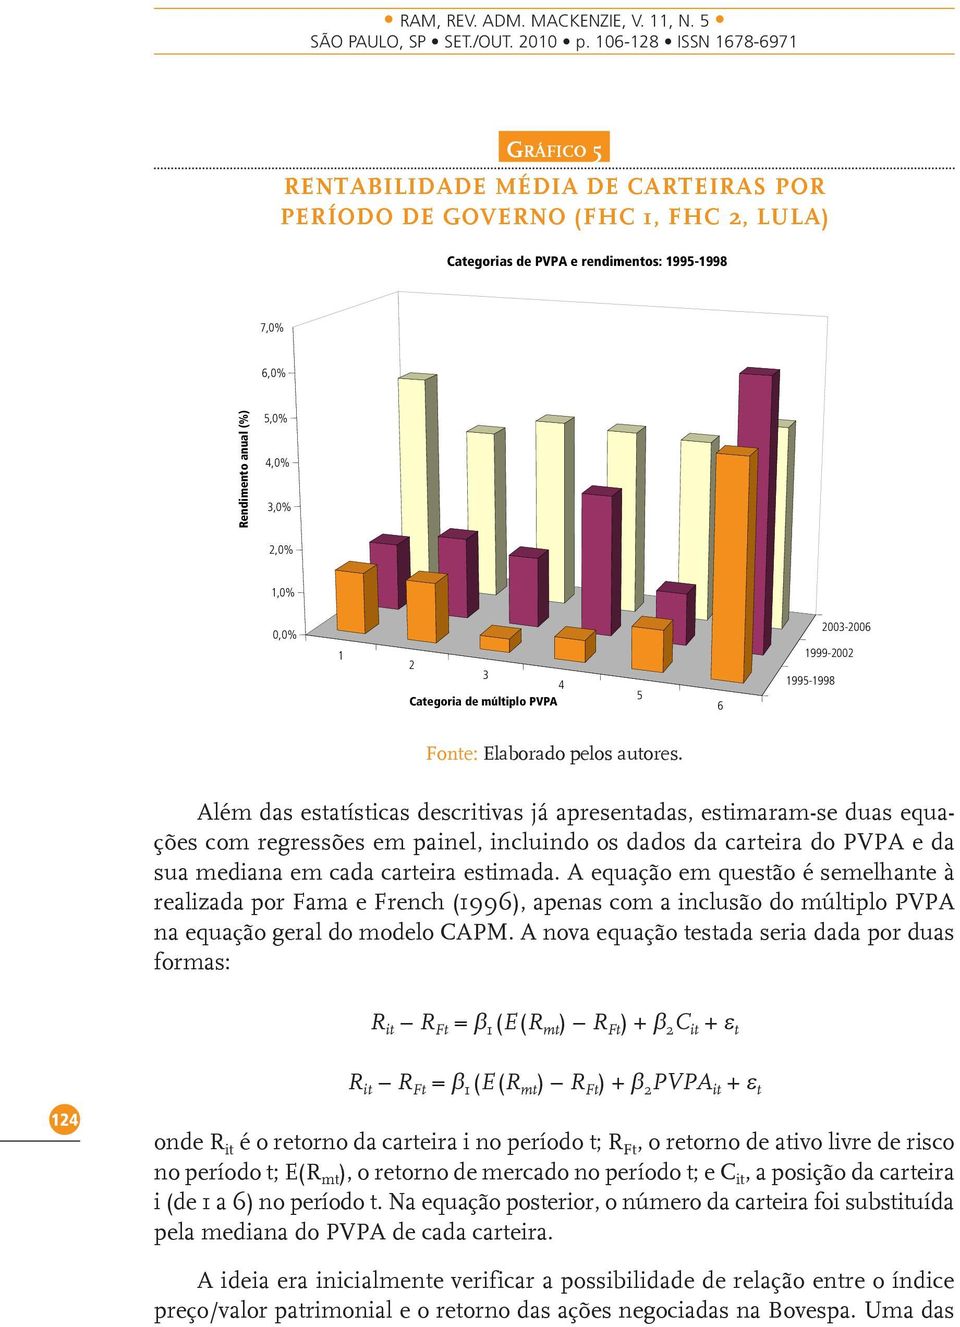 Além das estatísticas descritivas já apresentadas, estimaram-se duas equações com regressões em painel, incluindo os dados da carteira do PVPA e da sua mediana em cada carteira estimada.